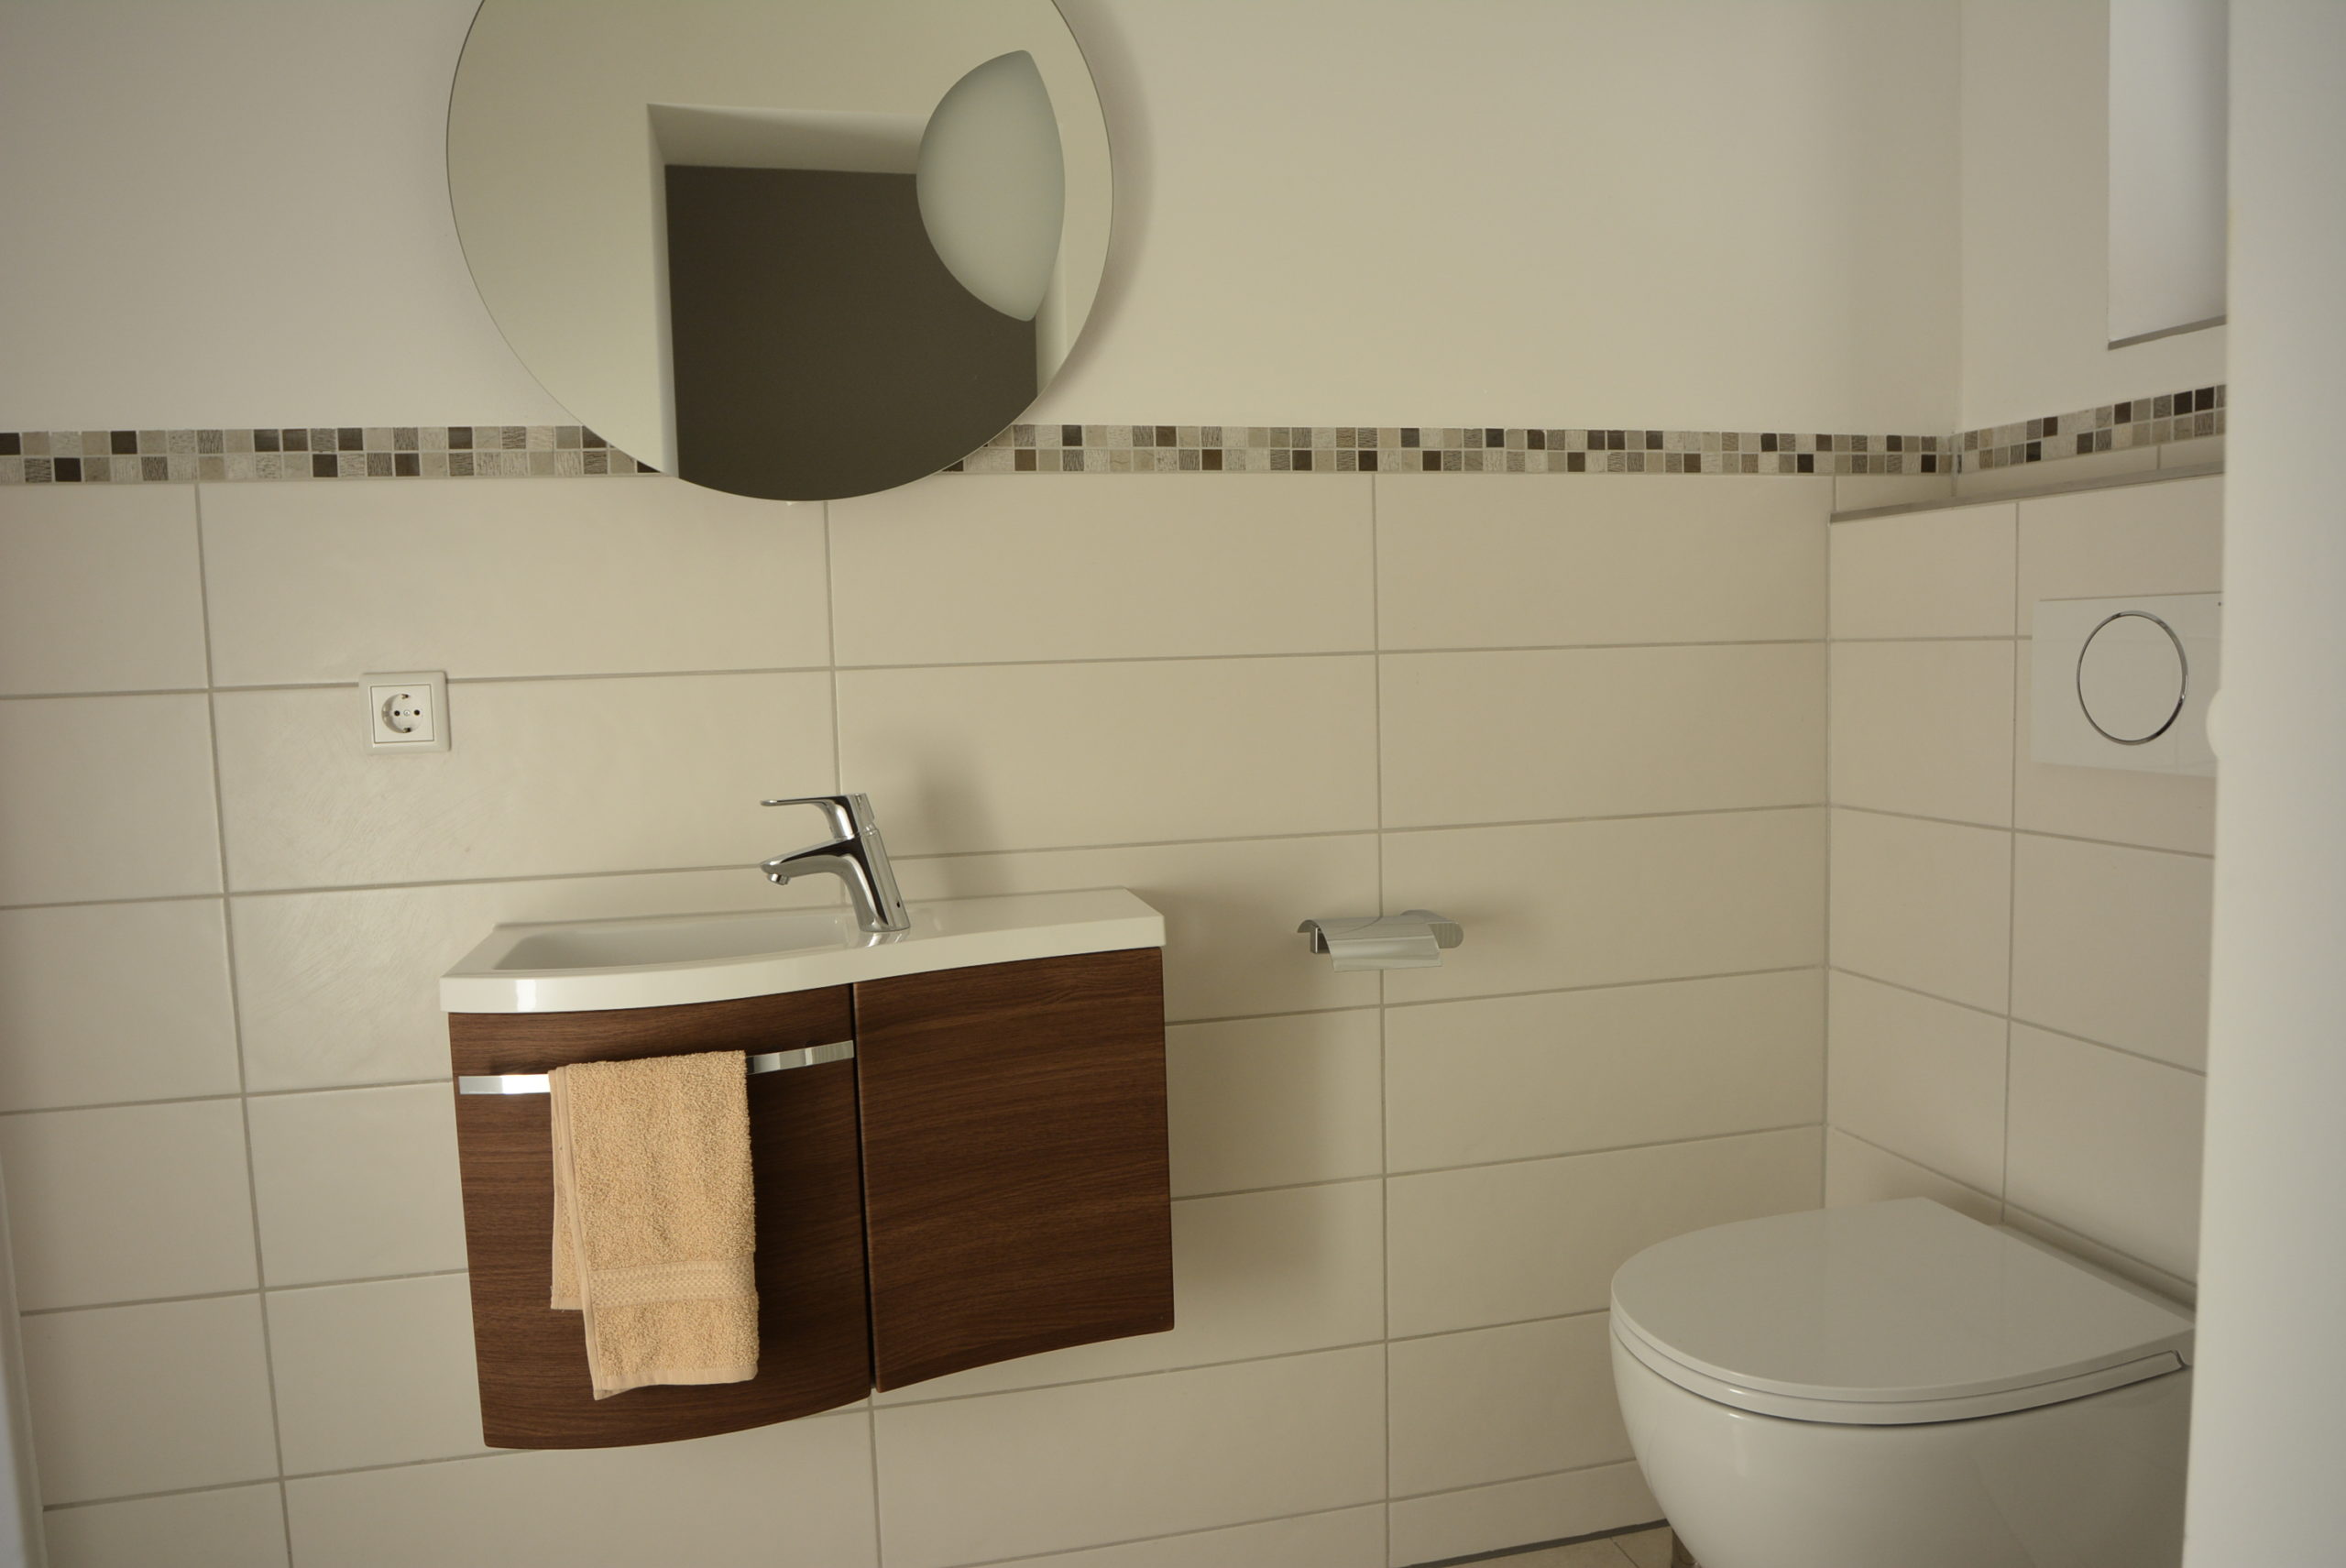 Gäste WC mit Handwaschbecken und rundem Wandspiegel